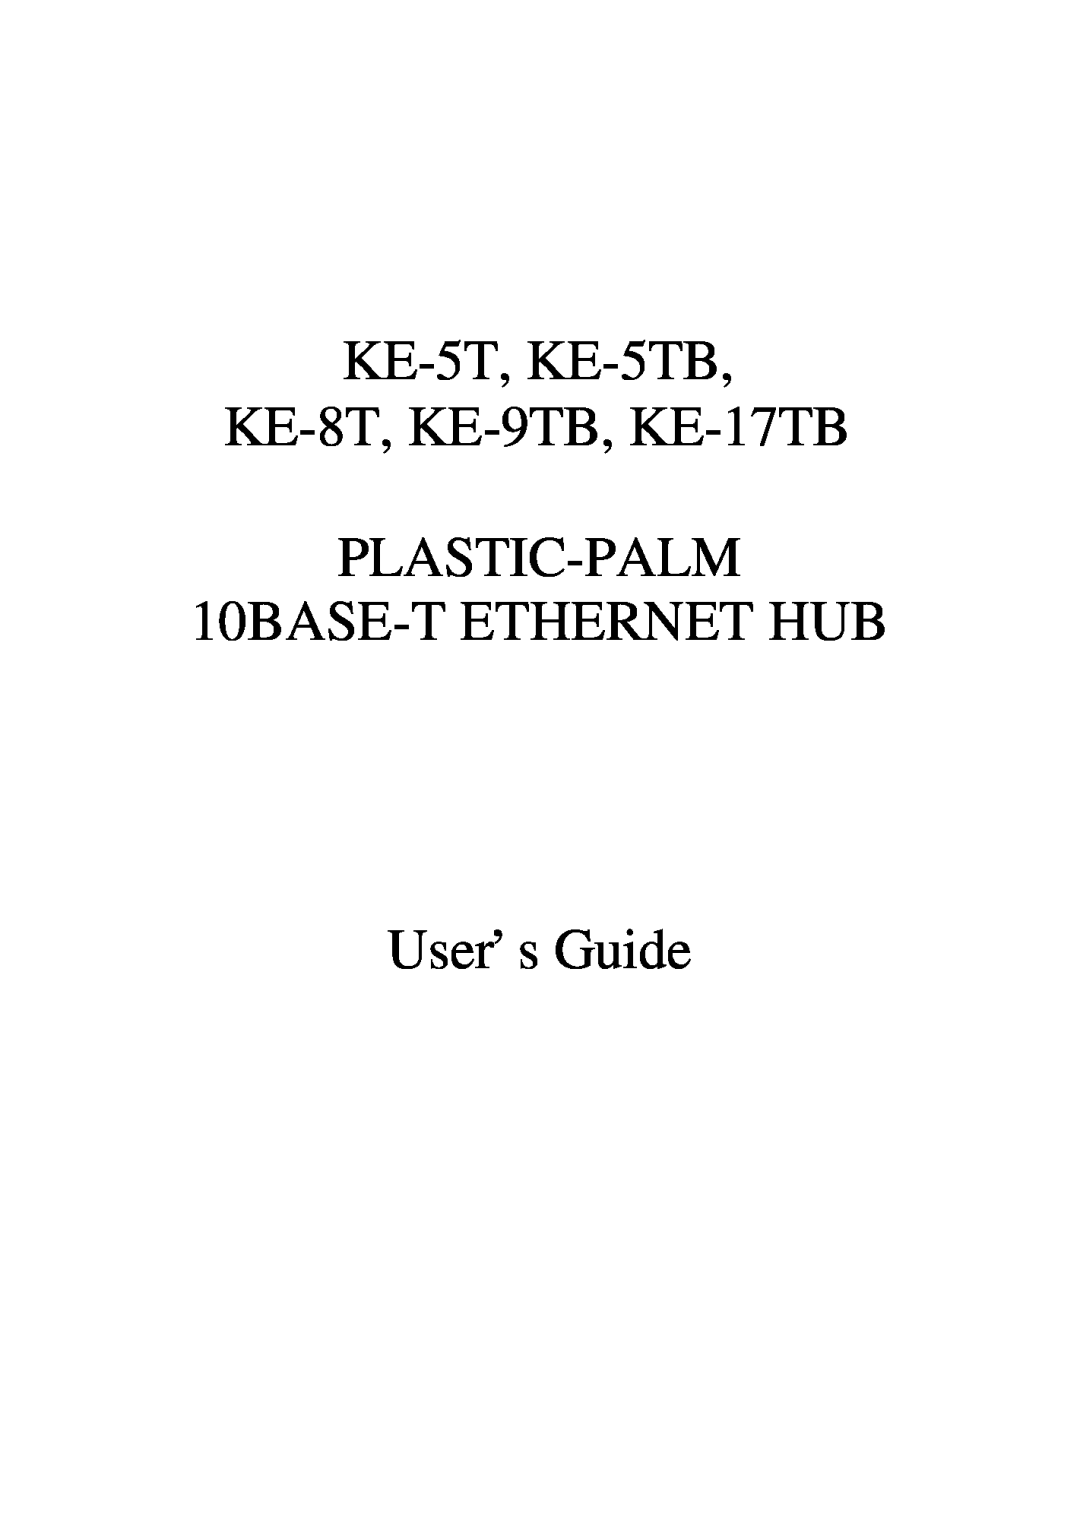 Palm manual KE-5T, KE-5TB KE-8T, KE-9TB, KE-17TB PLASTIC-PALM, 10BASE-T ETHERNET HUB User’s Guide 